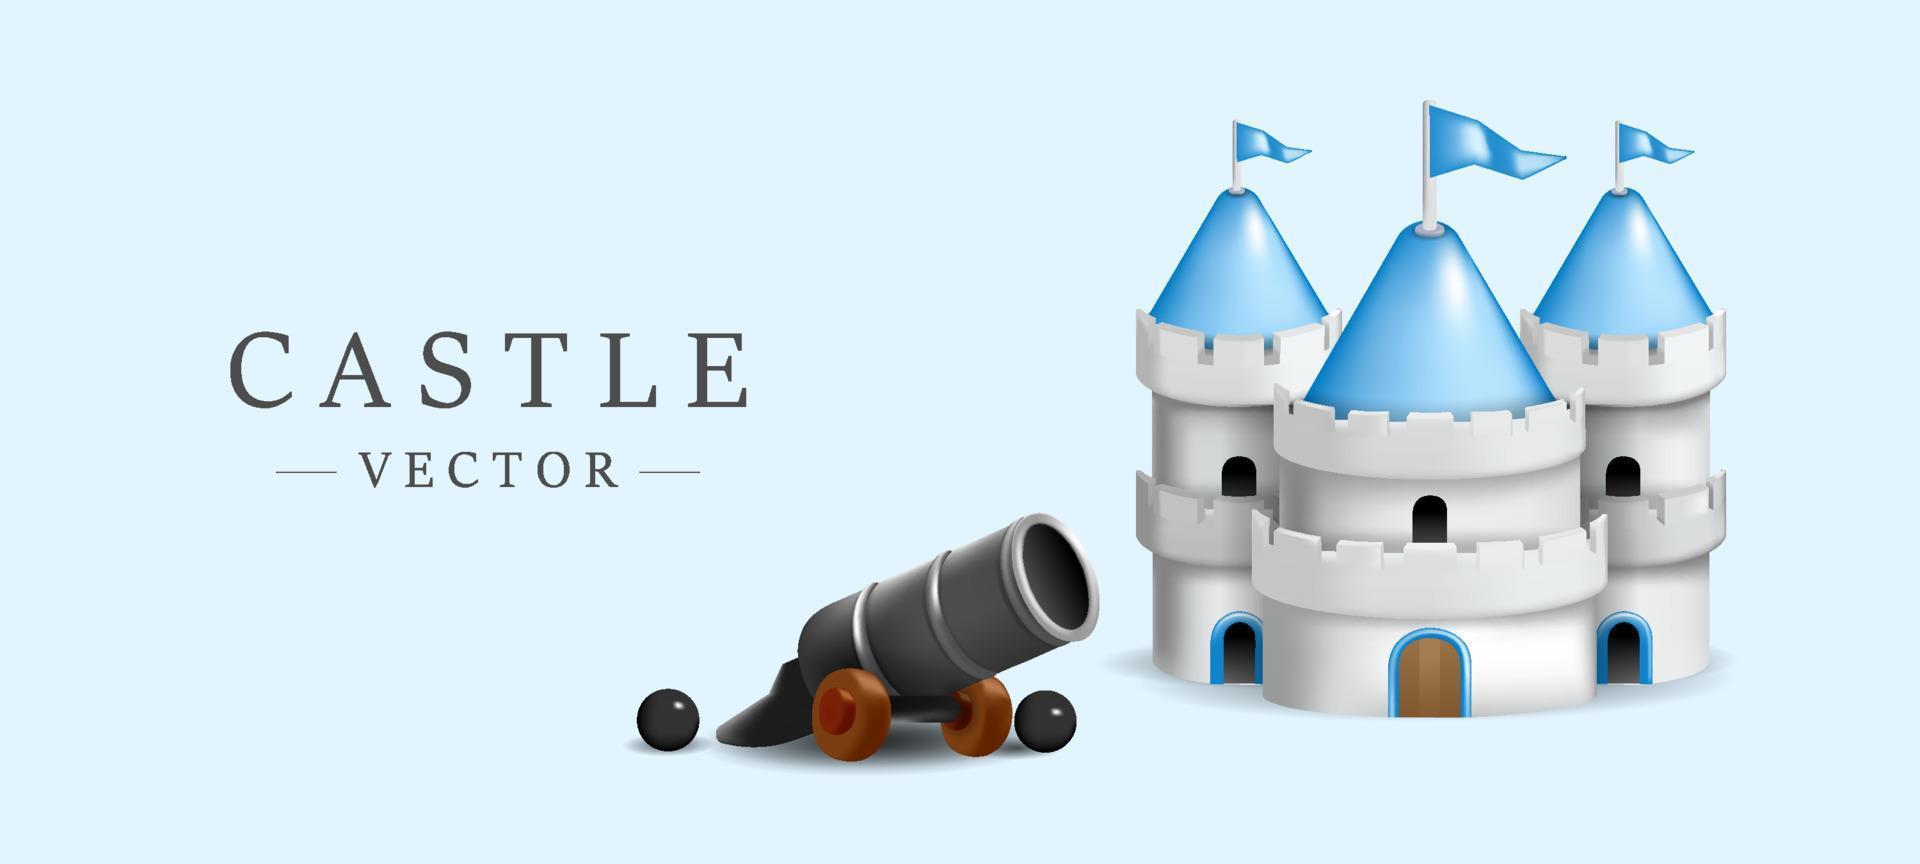 lindo castillo modelo 3d con mini cañón ilustración vectorial sobre fondo azul cielo vector